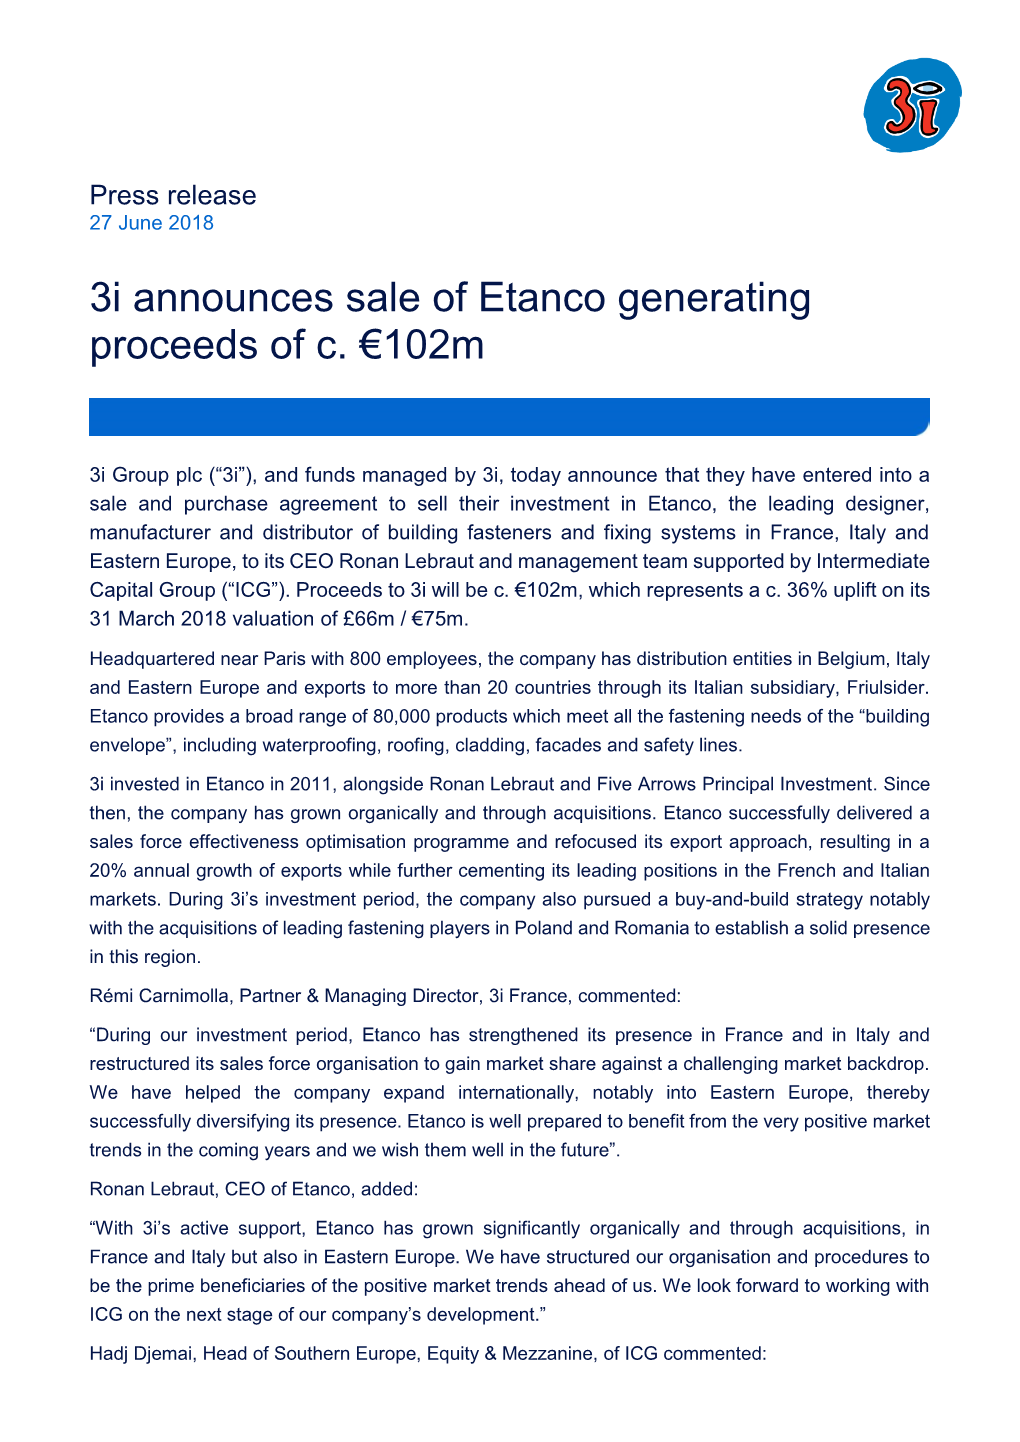 3I Announces Sale of Etanco Generating Proceeds of C. €102M